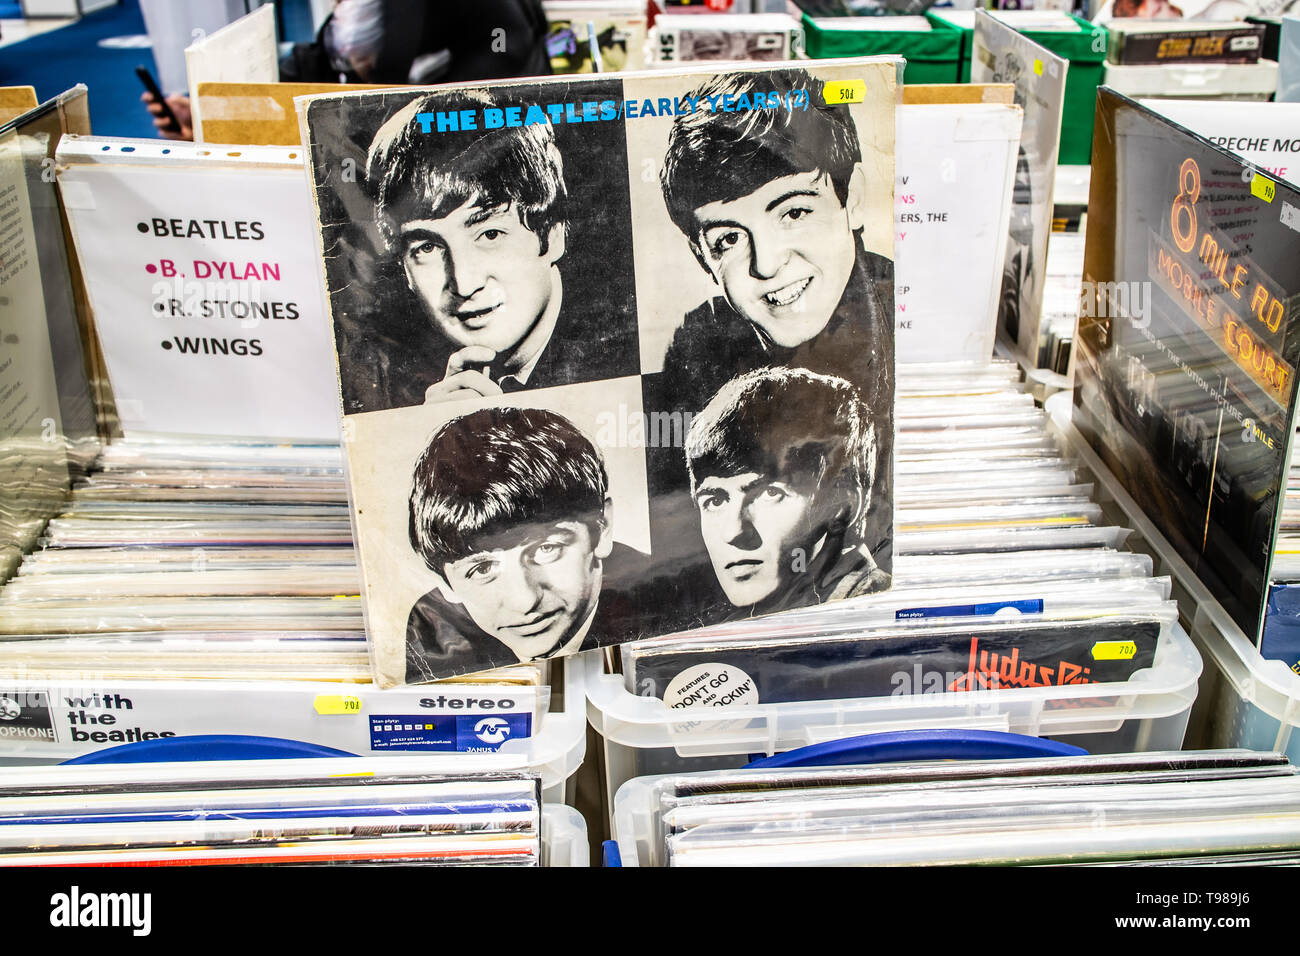 Nadarzyn, Pologne, le 11 mai 2019 les Beatles album vinyle sur l'affichage pour la vente, vinyle, CD, album, Rock, groupe de rock anglais, collection de vinyls Banque D'Images